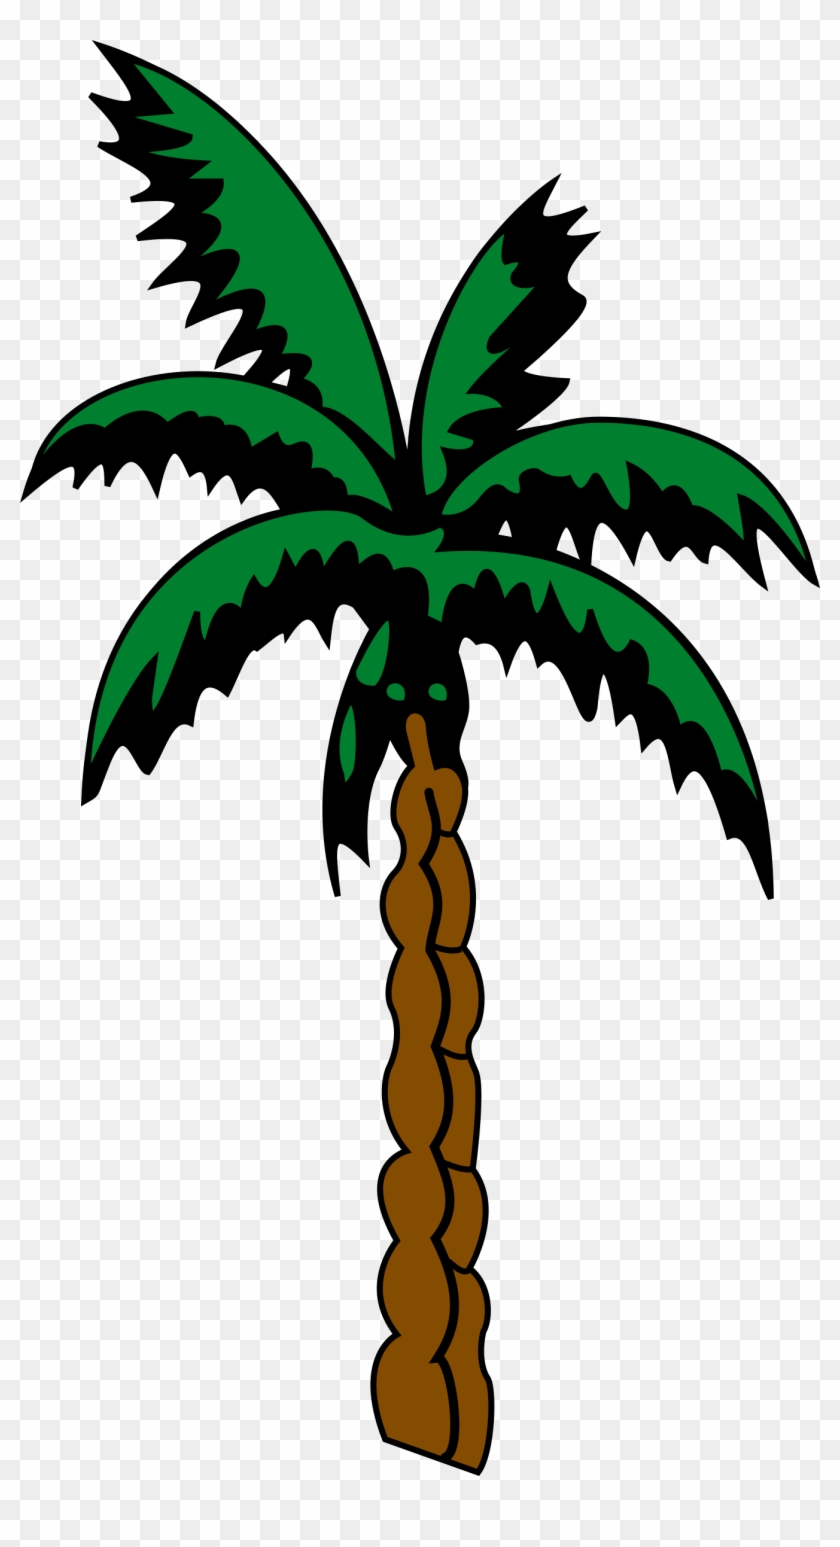 Palm Tree 4 - Pohon Palem Vektor #1751369